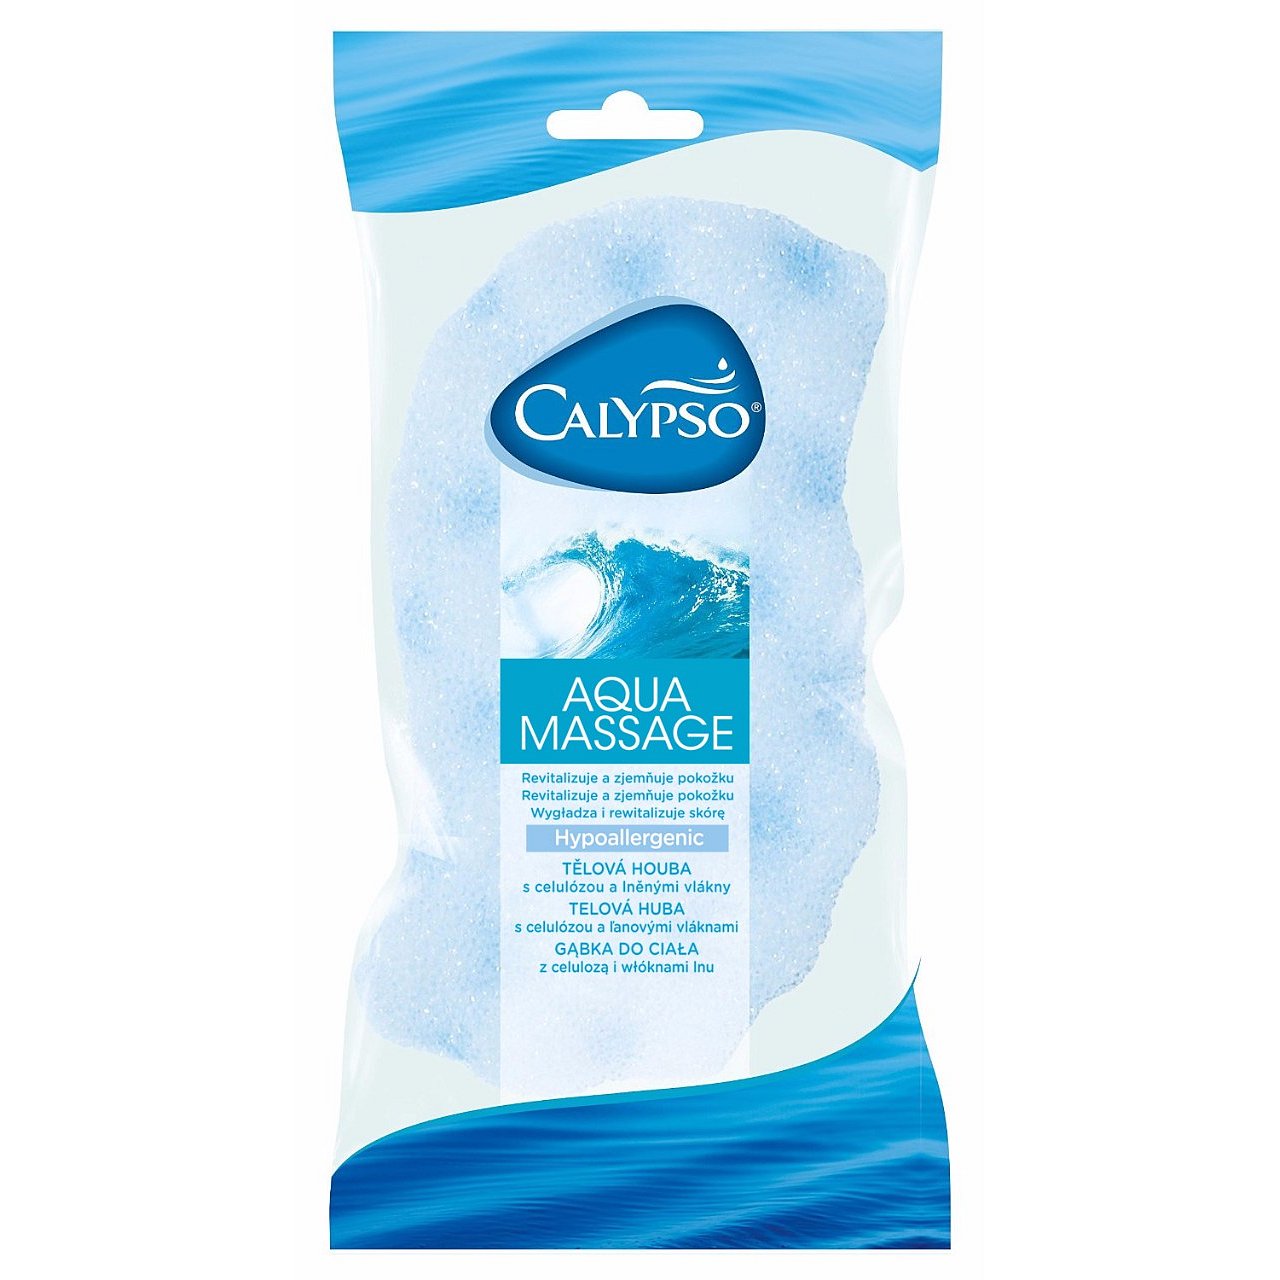 CALYPSO Aqua Massage Koupelová houba viskózní